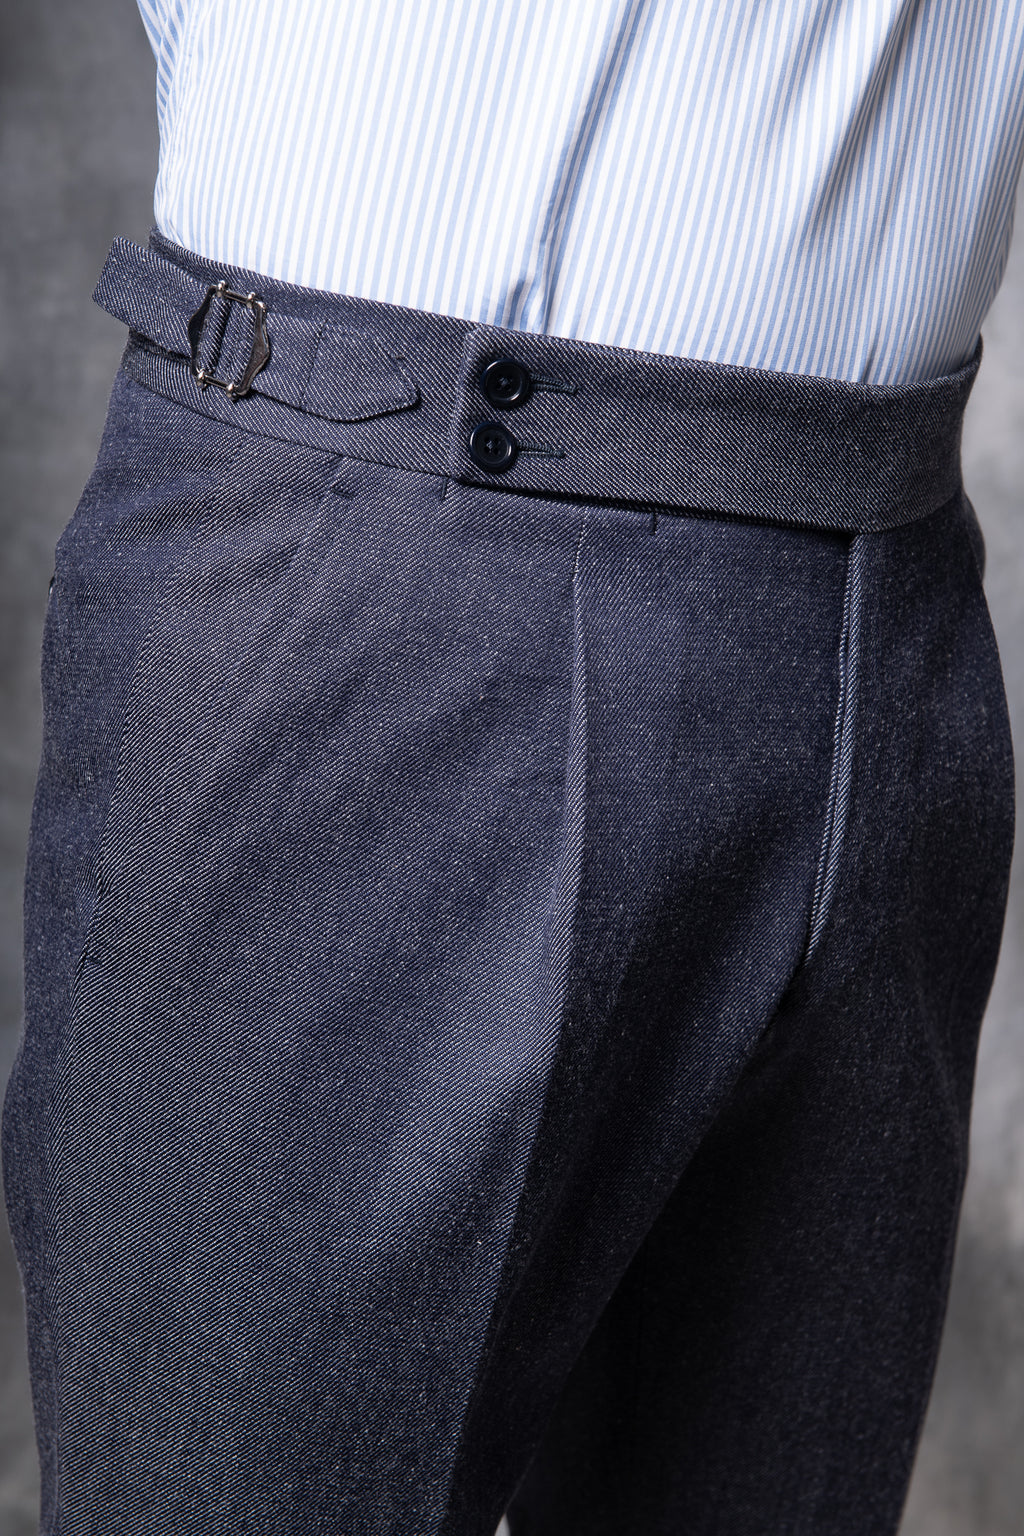 Pantalon en coton écru Soragna Capsule Collection  - -. Made in Italy